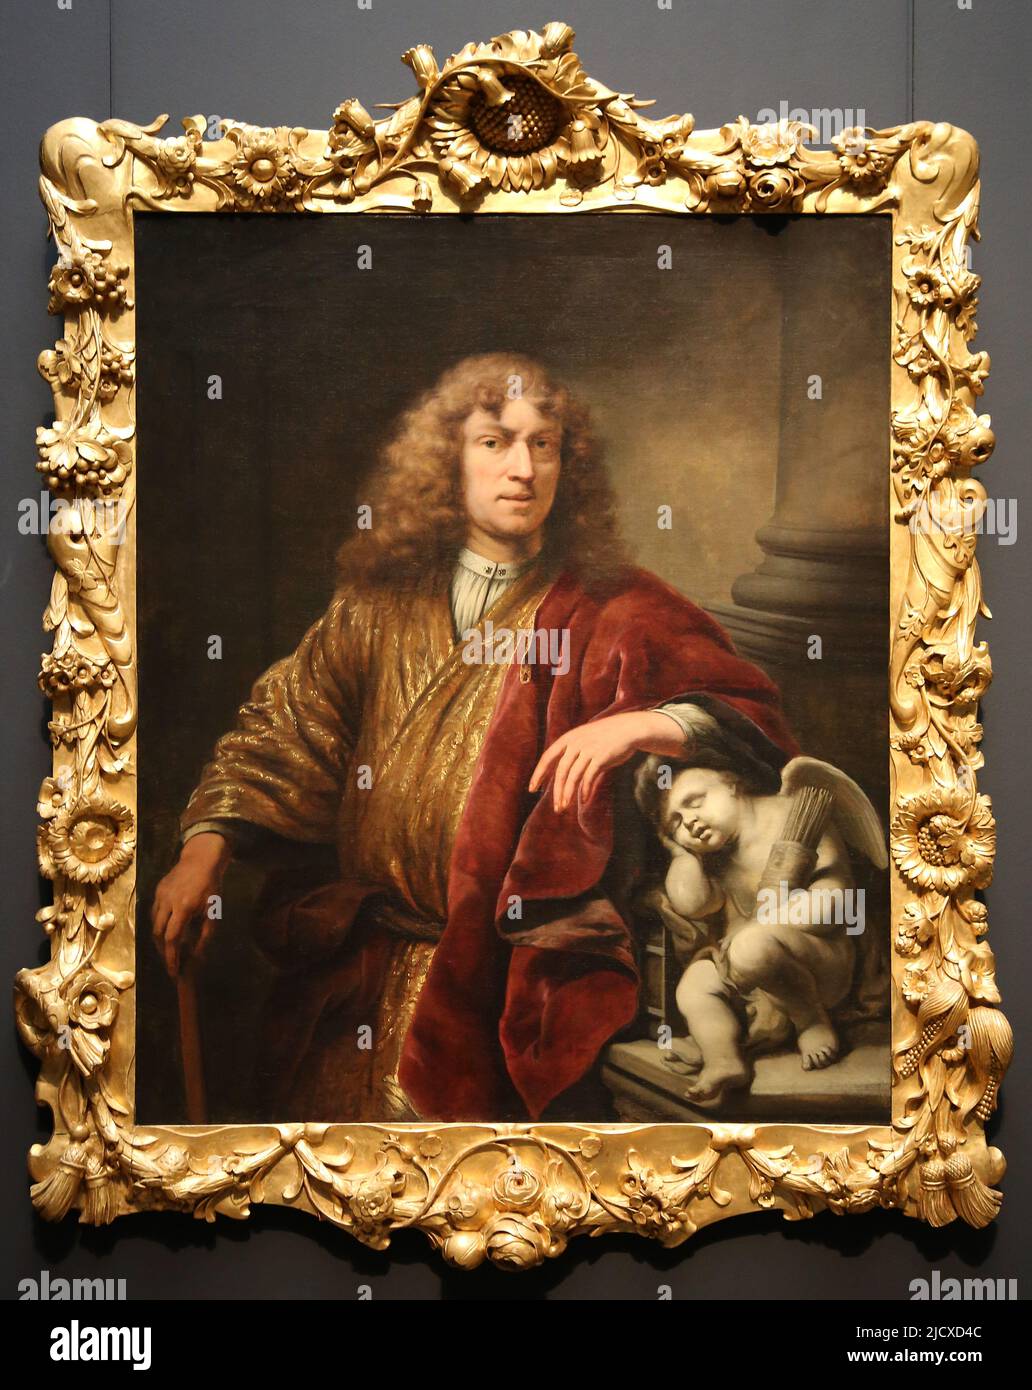 Ferdinand bol (1616-1680). Autoportrait. Huile sur toile, c. 1669. Rijksmuseum. Amsterdam. Pays-Bas. Banque D'Images